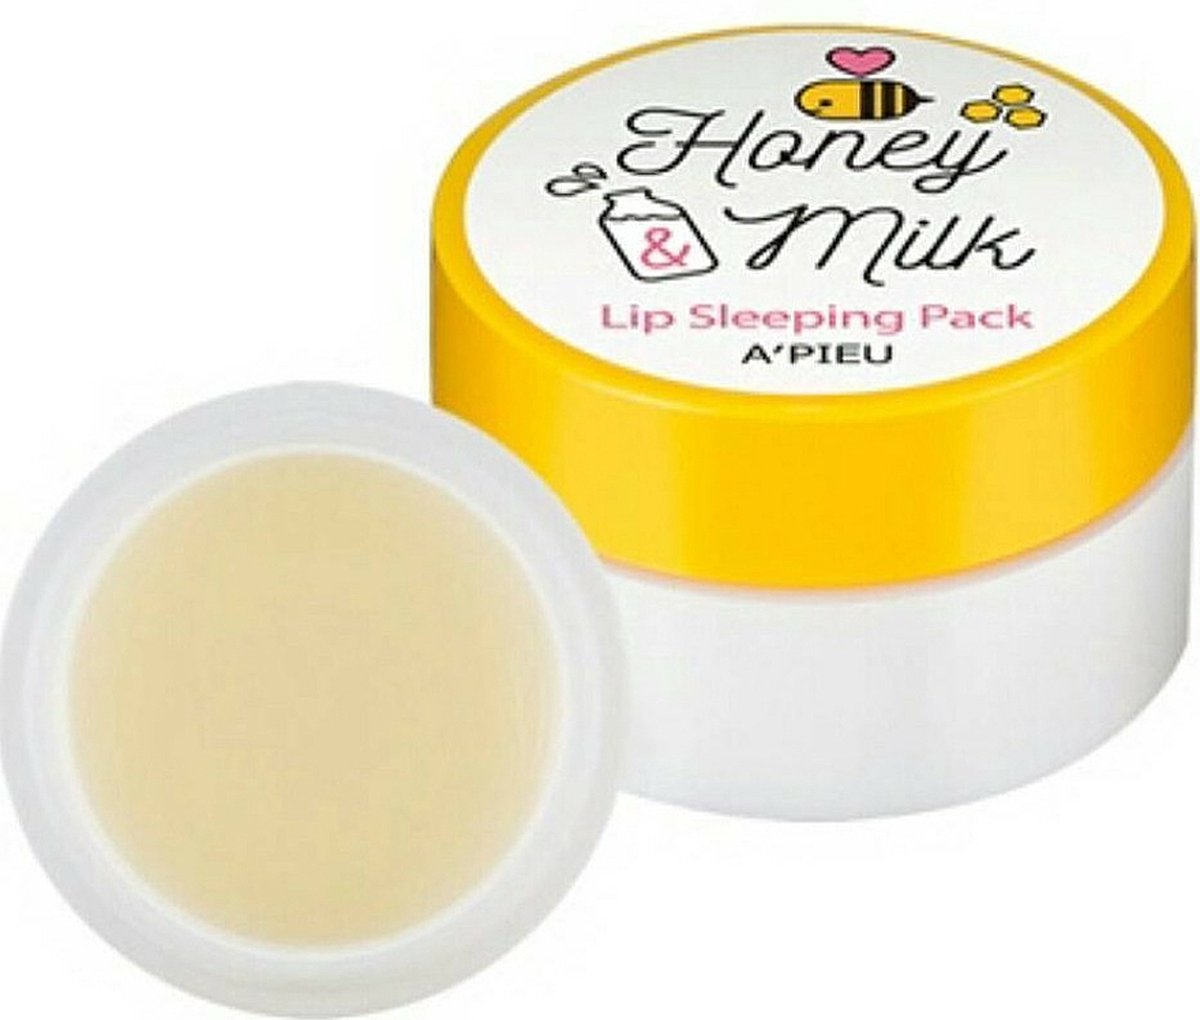 A' pieu Honey & Milk Lip Sleeping Pack - lipmasker - droge lippen